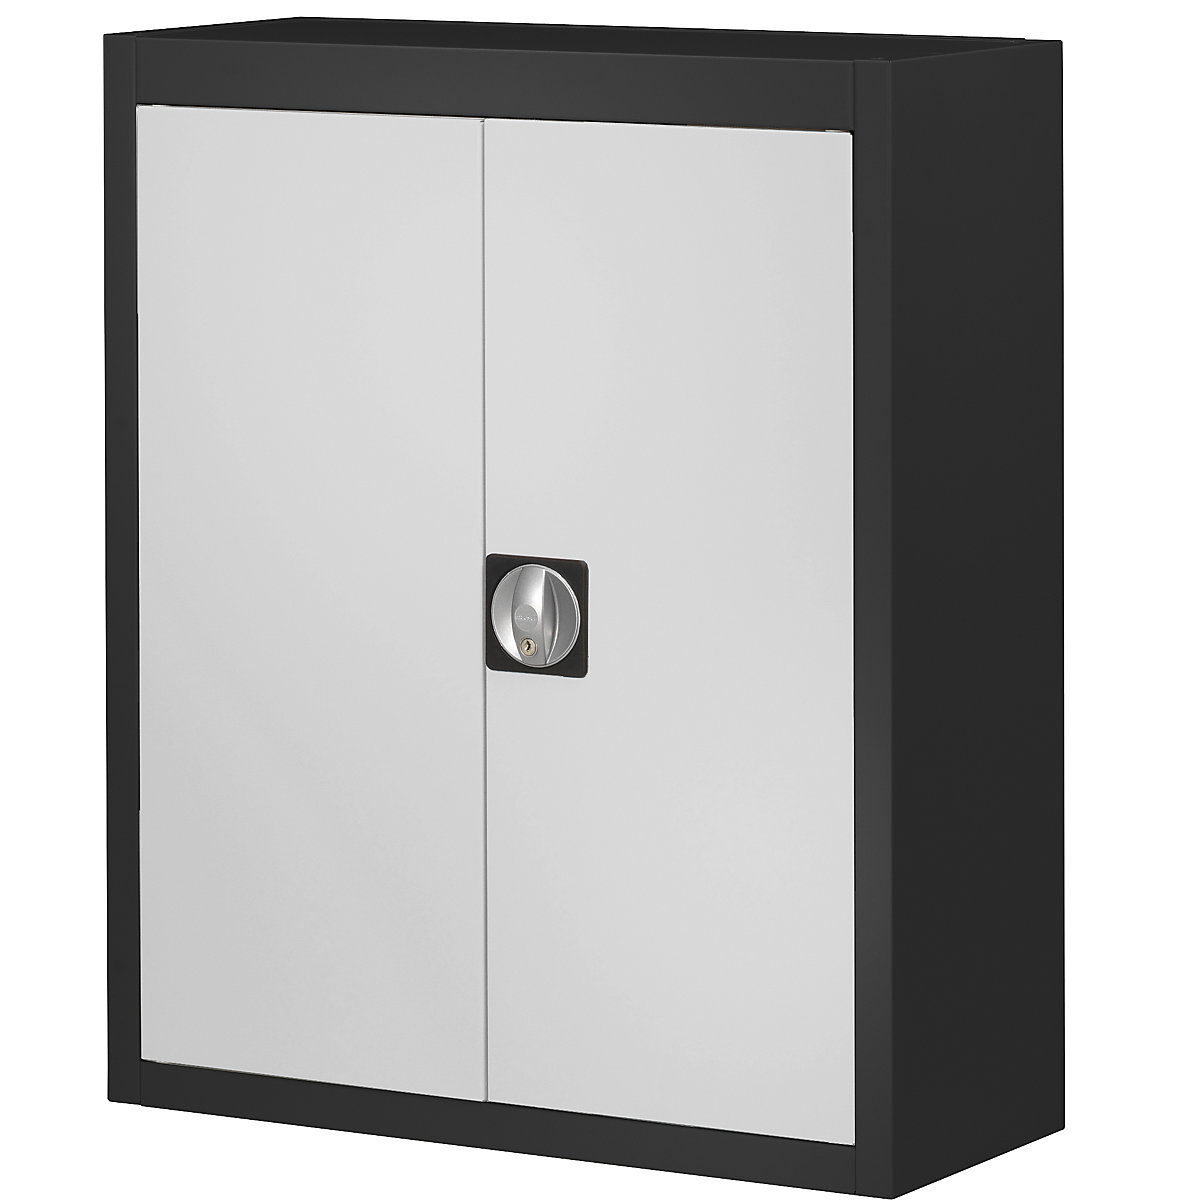 Armario-almacén, sin cajas visualizables – mauser, H x A x P 820 x 680 x 280 mm, bicolor, cuerpo negro, puertas en gris-4